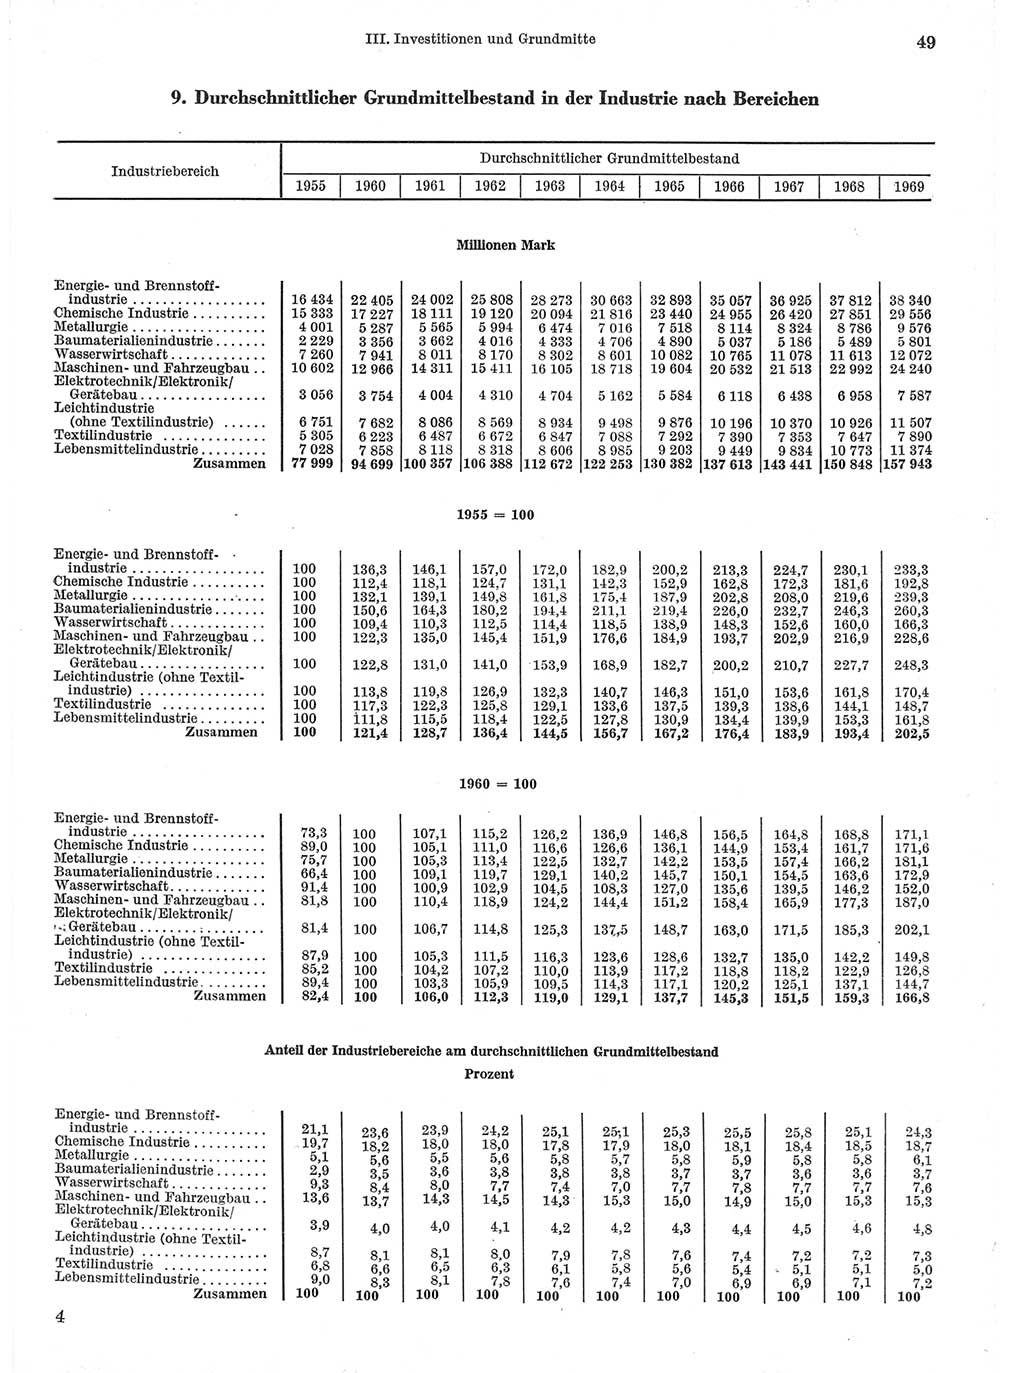 Statistisches Jahrbuch der Deutschen Demokratischen Republik (DDR) 1971, Seite 49 (Stat. Jb. DDR 1971, S. 49)